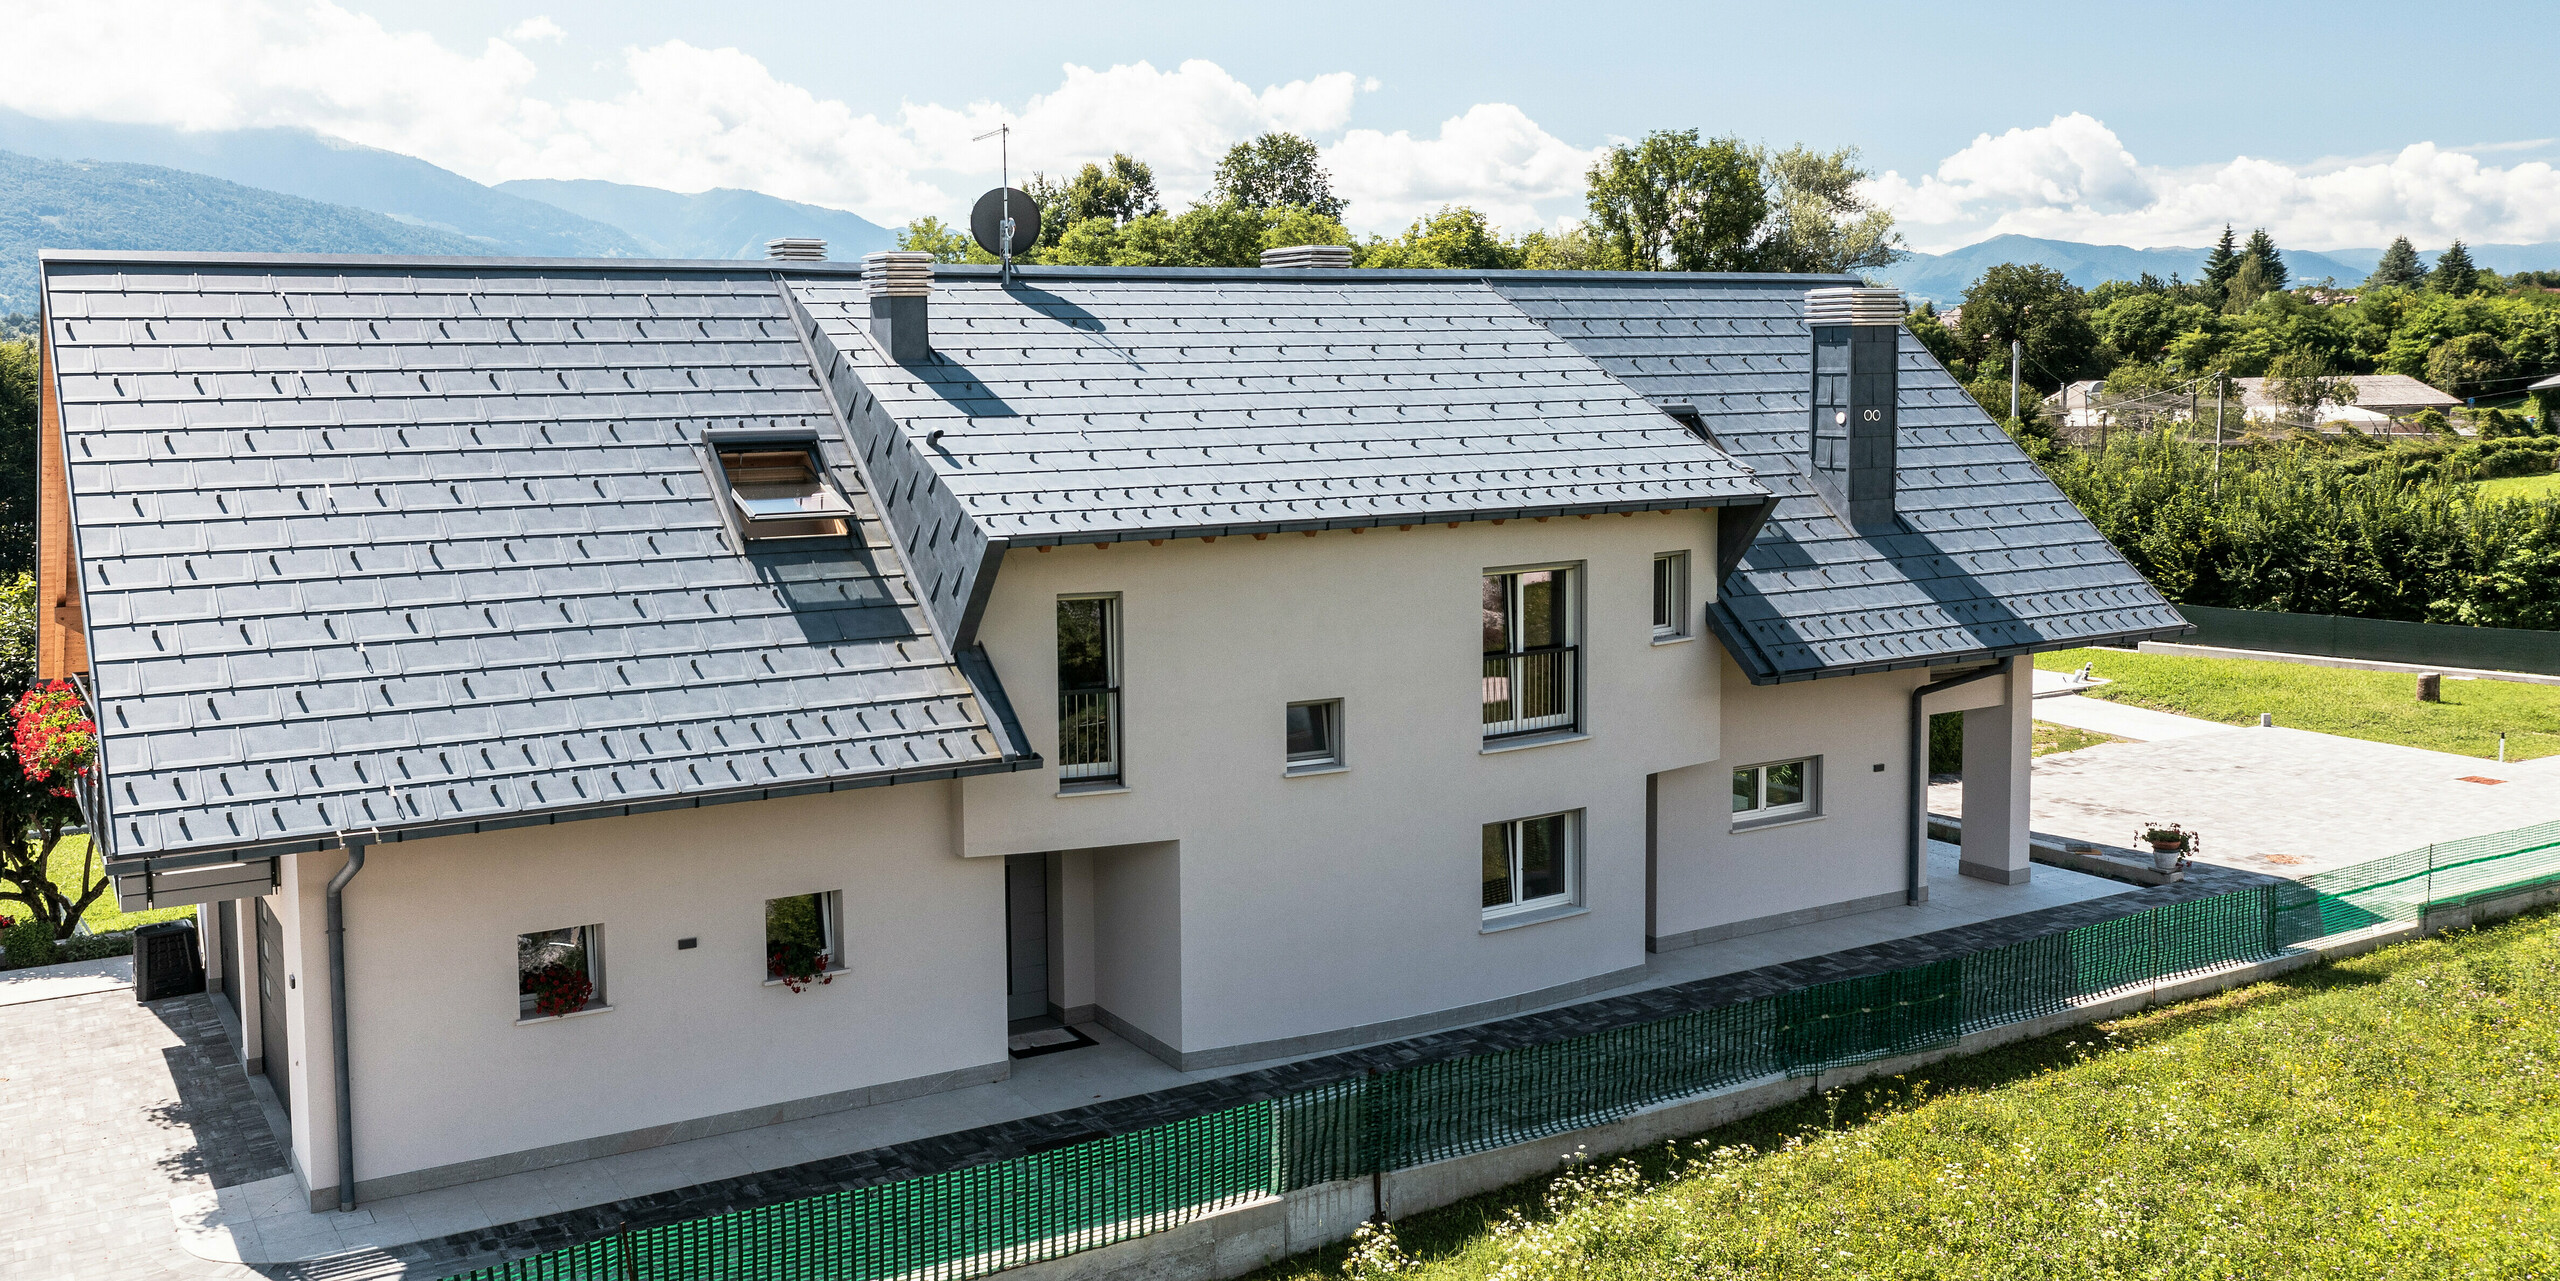 Rodinný dům v Belluno, Itálie, s elegantní střechou PREFA ze střešních panelů R16 v barvě P.10 antracit. Systém odvodnění střechy sestávající z krabicového žlabu a odtokové trubky je barevně sladěn a dotváří estetický a funkční design střechy. Díky své tradiční konstrukci a modernímu střešnímu materiálu nabízí dům atraktivní kontrast na malebném horském pozadí.